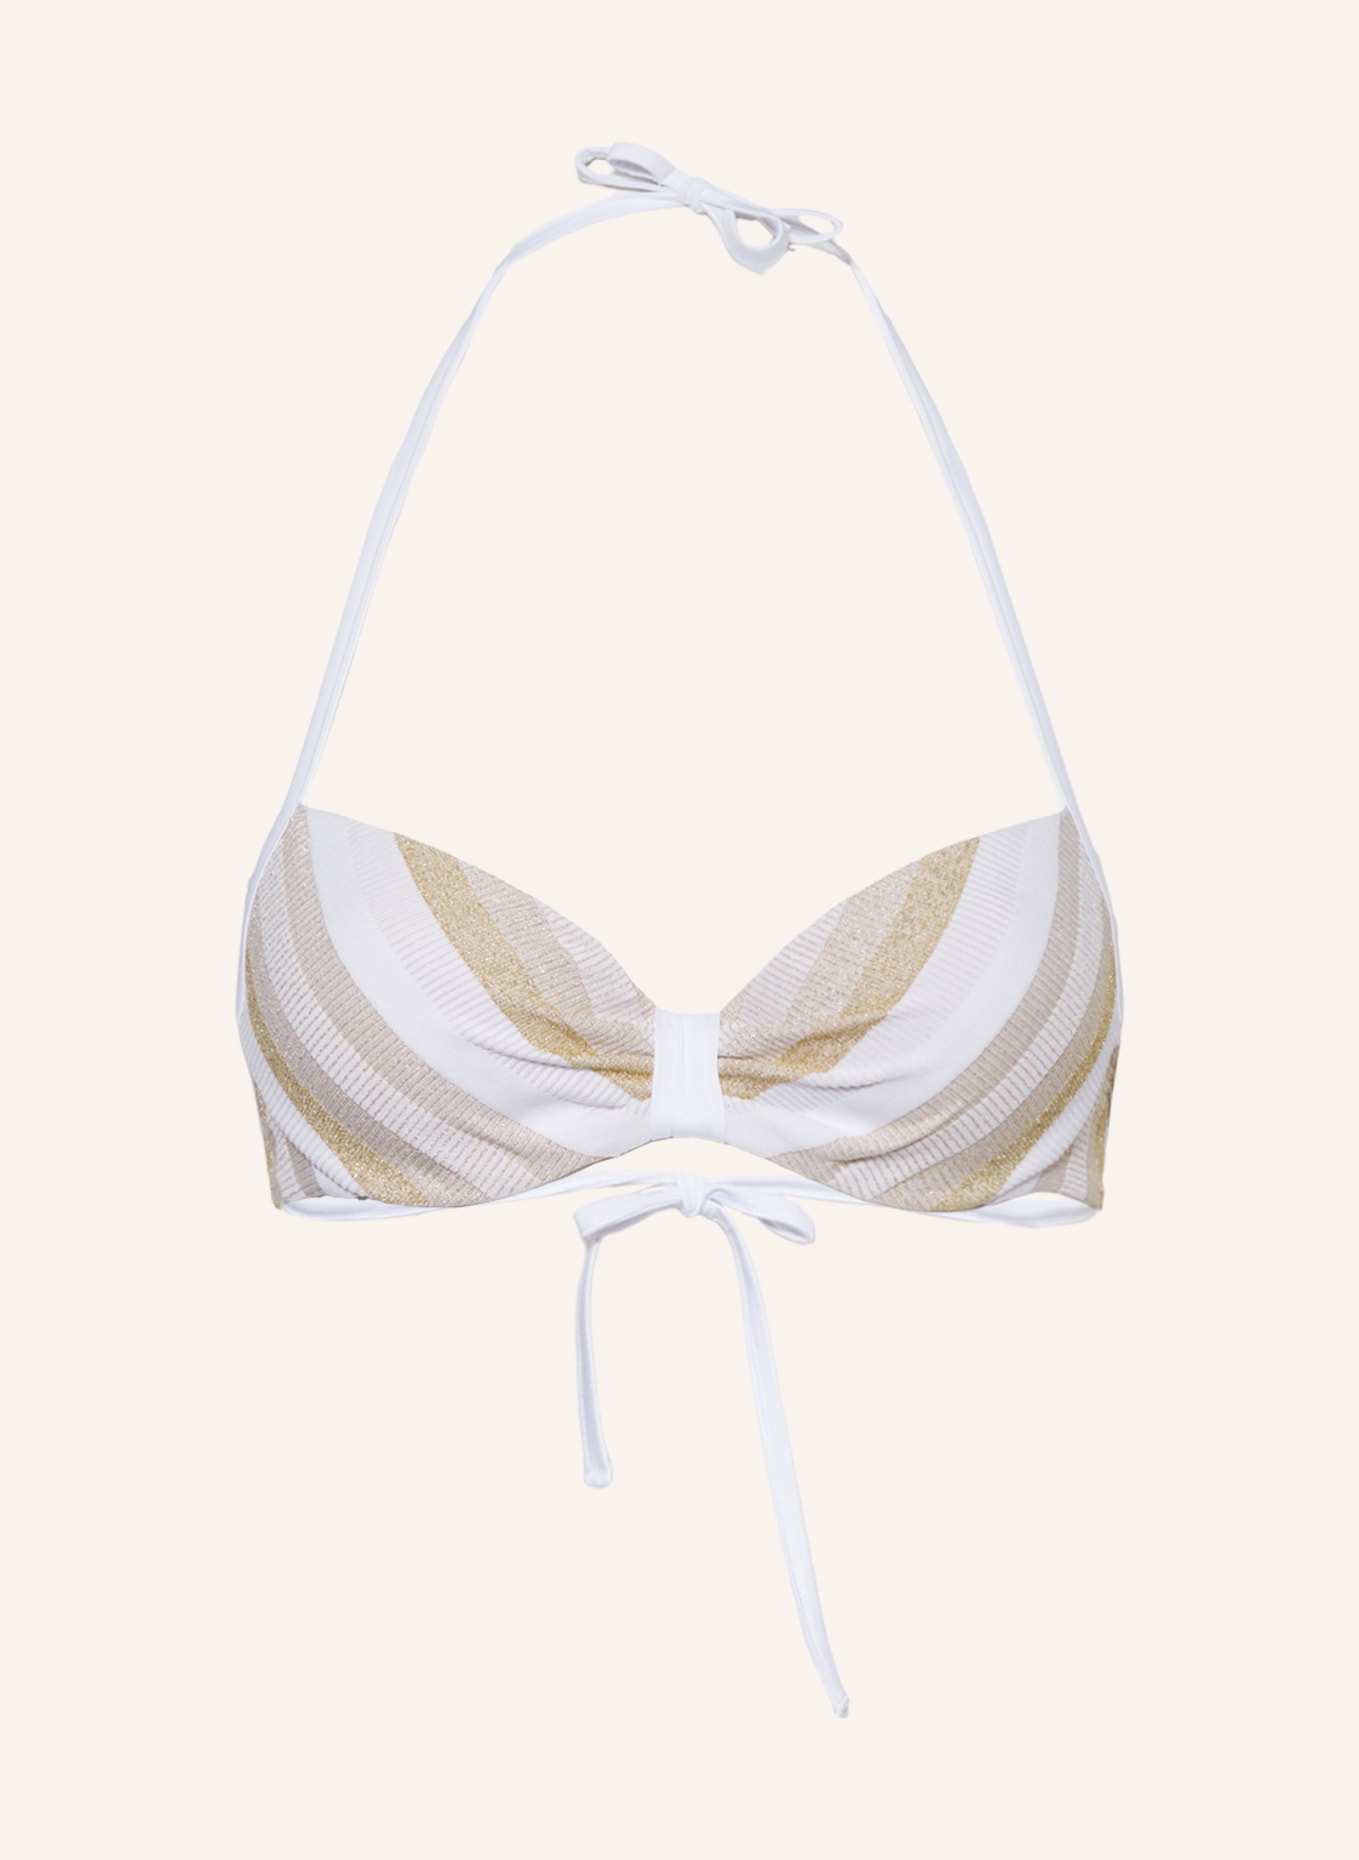 Max Mara BEACHWEAR Bügel-Bikini-Top AZURRA mit Glitzergarn, Farbe: WEISS/ GOLD (Bild 1)